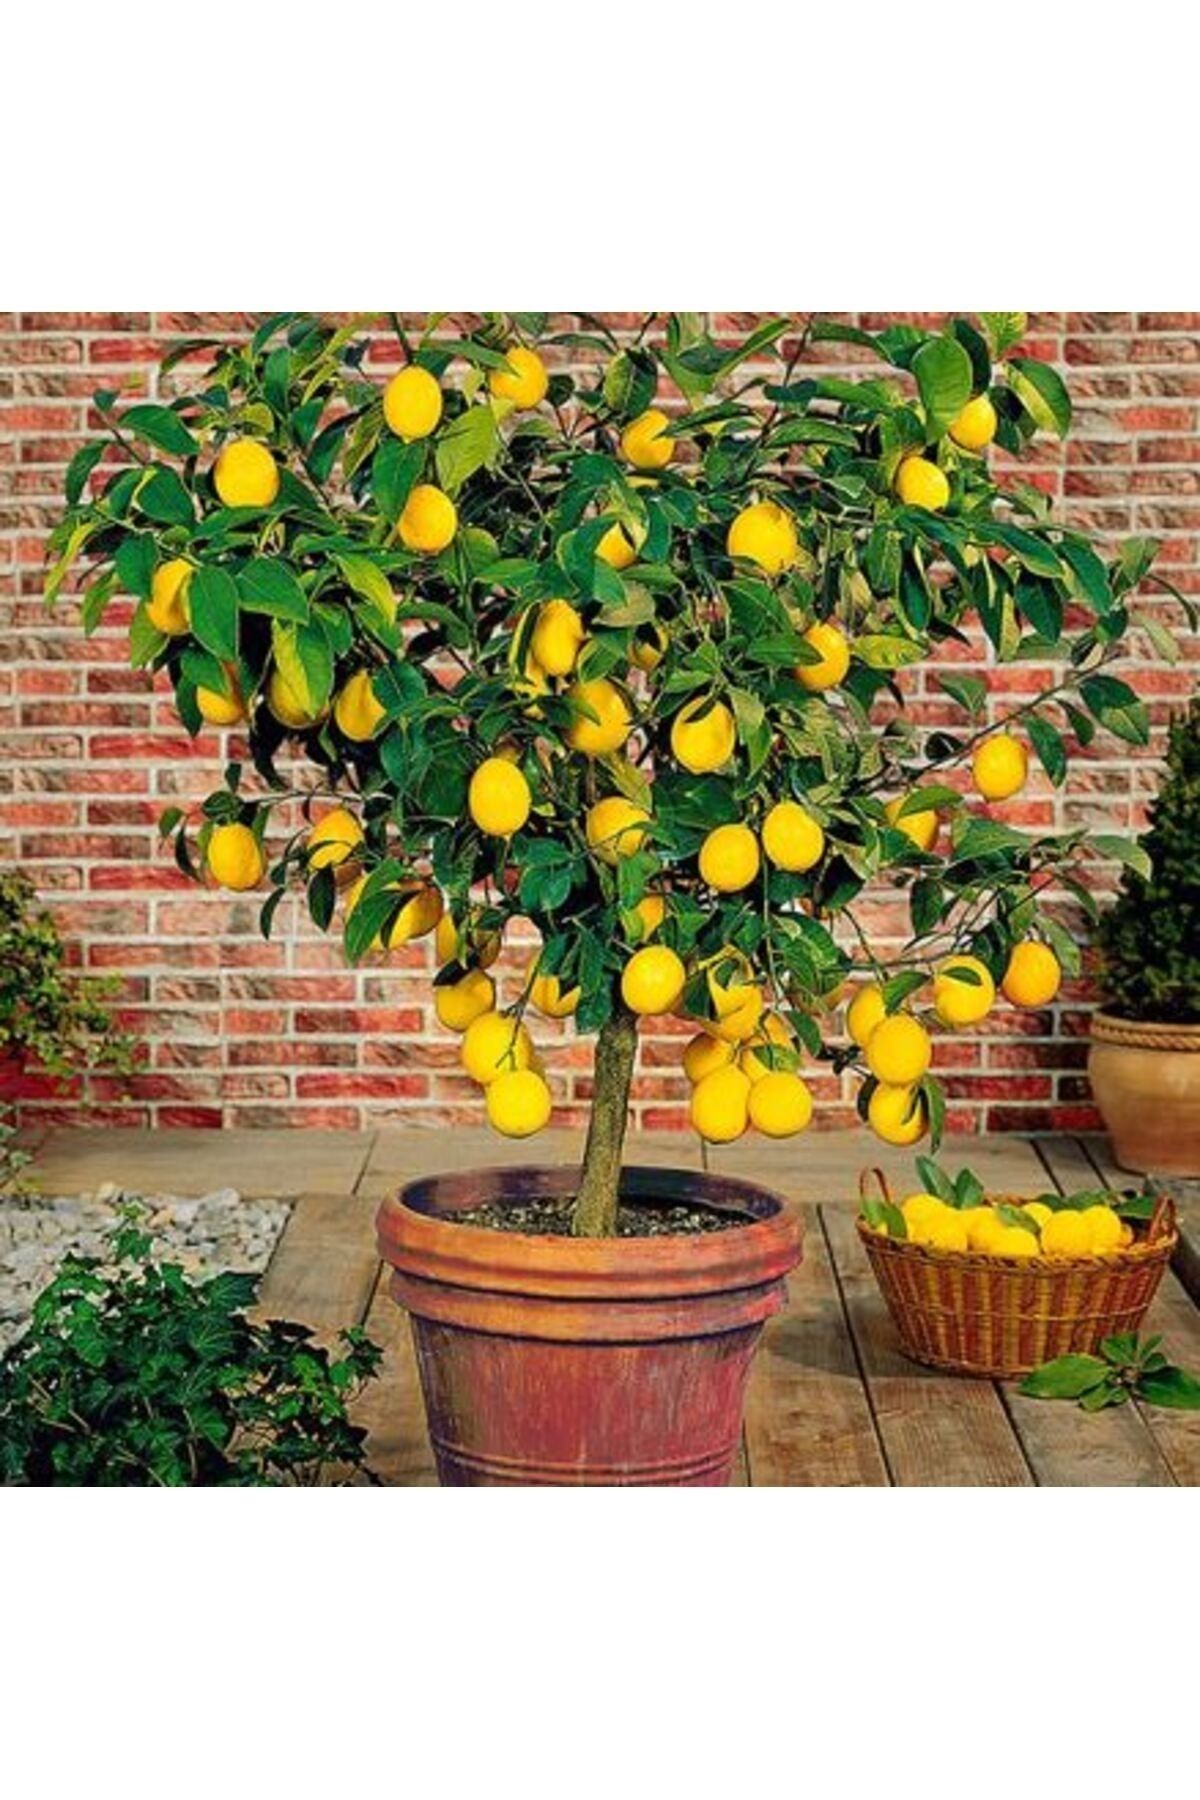 EVİM BAHÇEM Saksılı Bodur Limon Fidanı (MEYVELİ) 2 Yaş Limon Ağacı Fidanı Yediveren Mayer Limon Fidesi